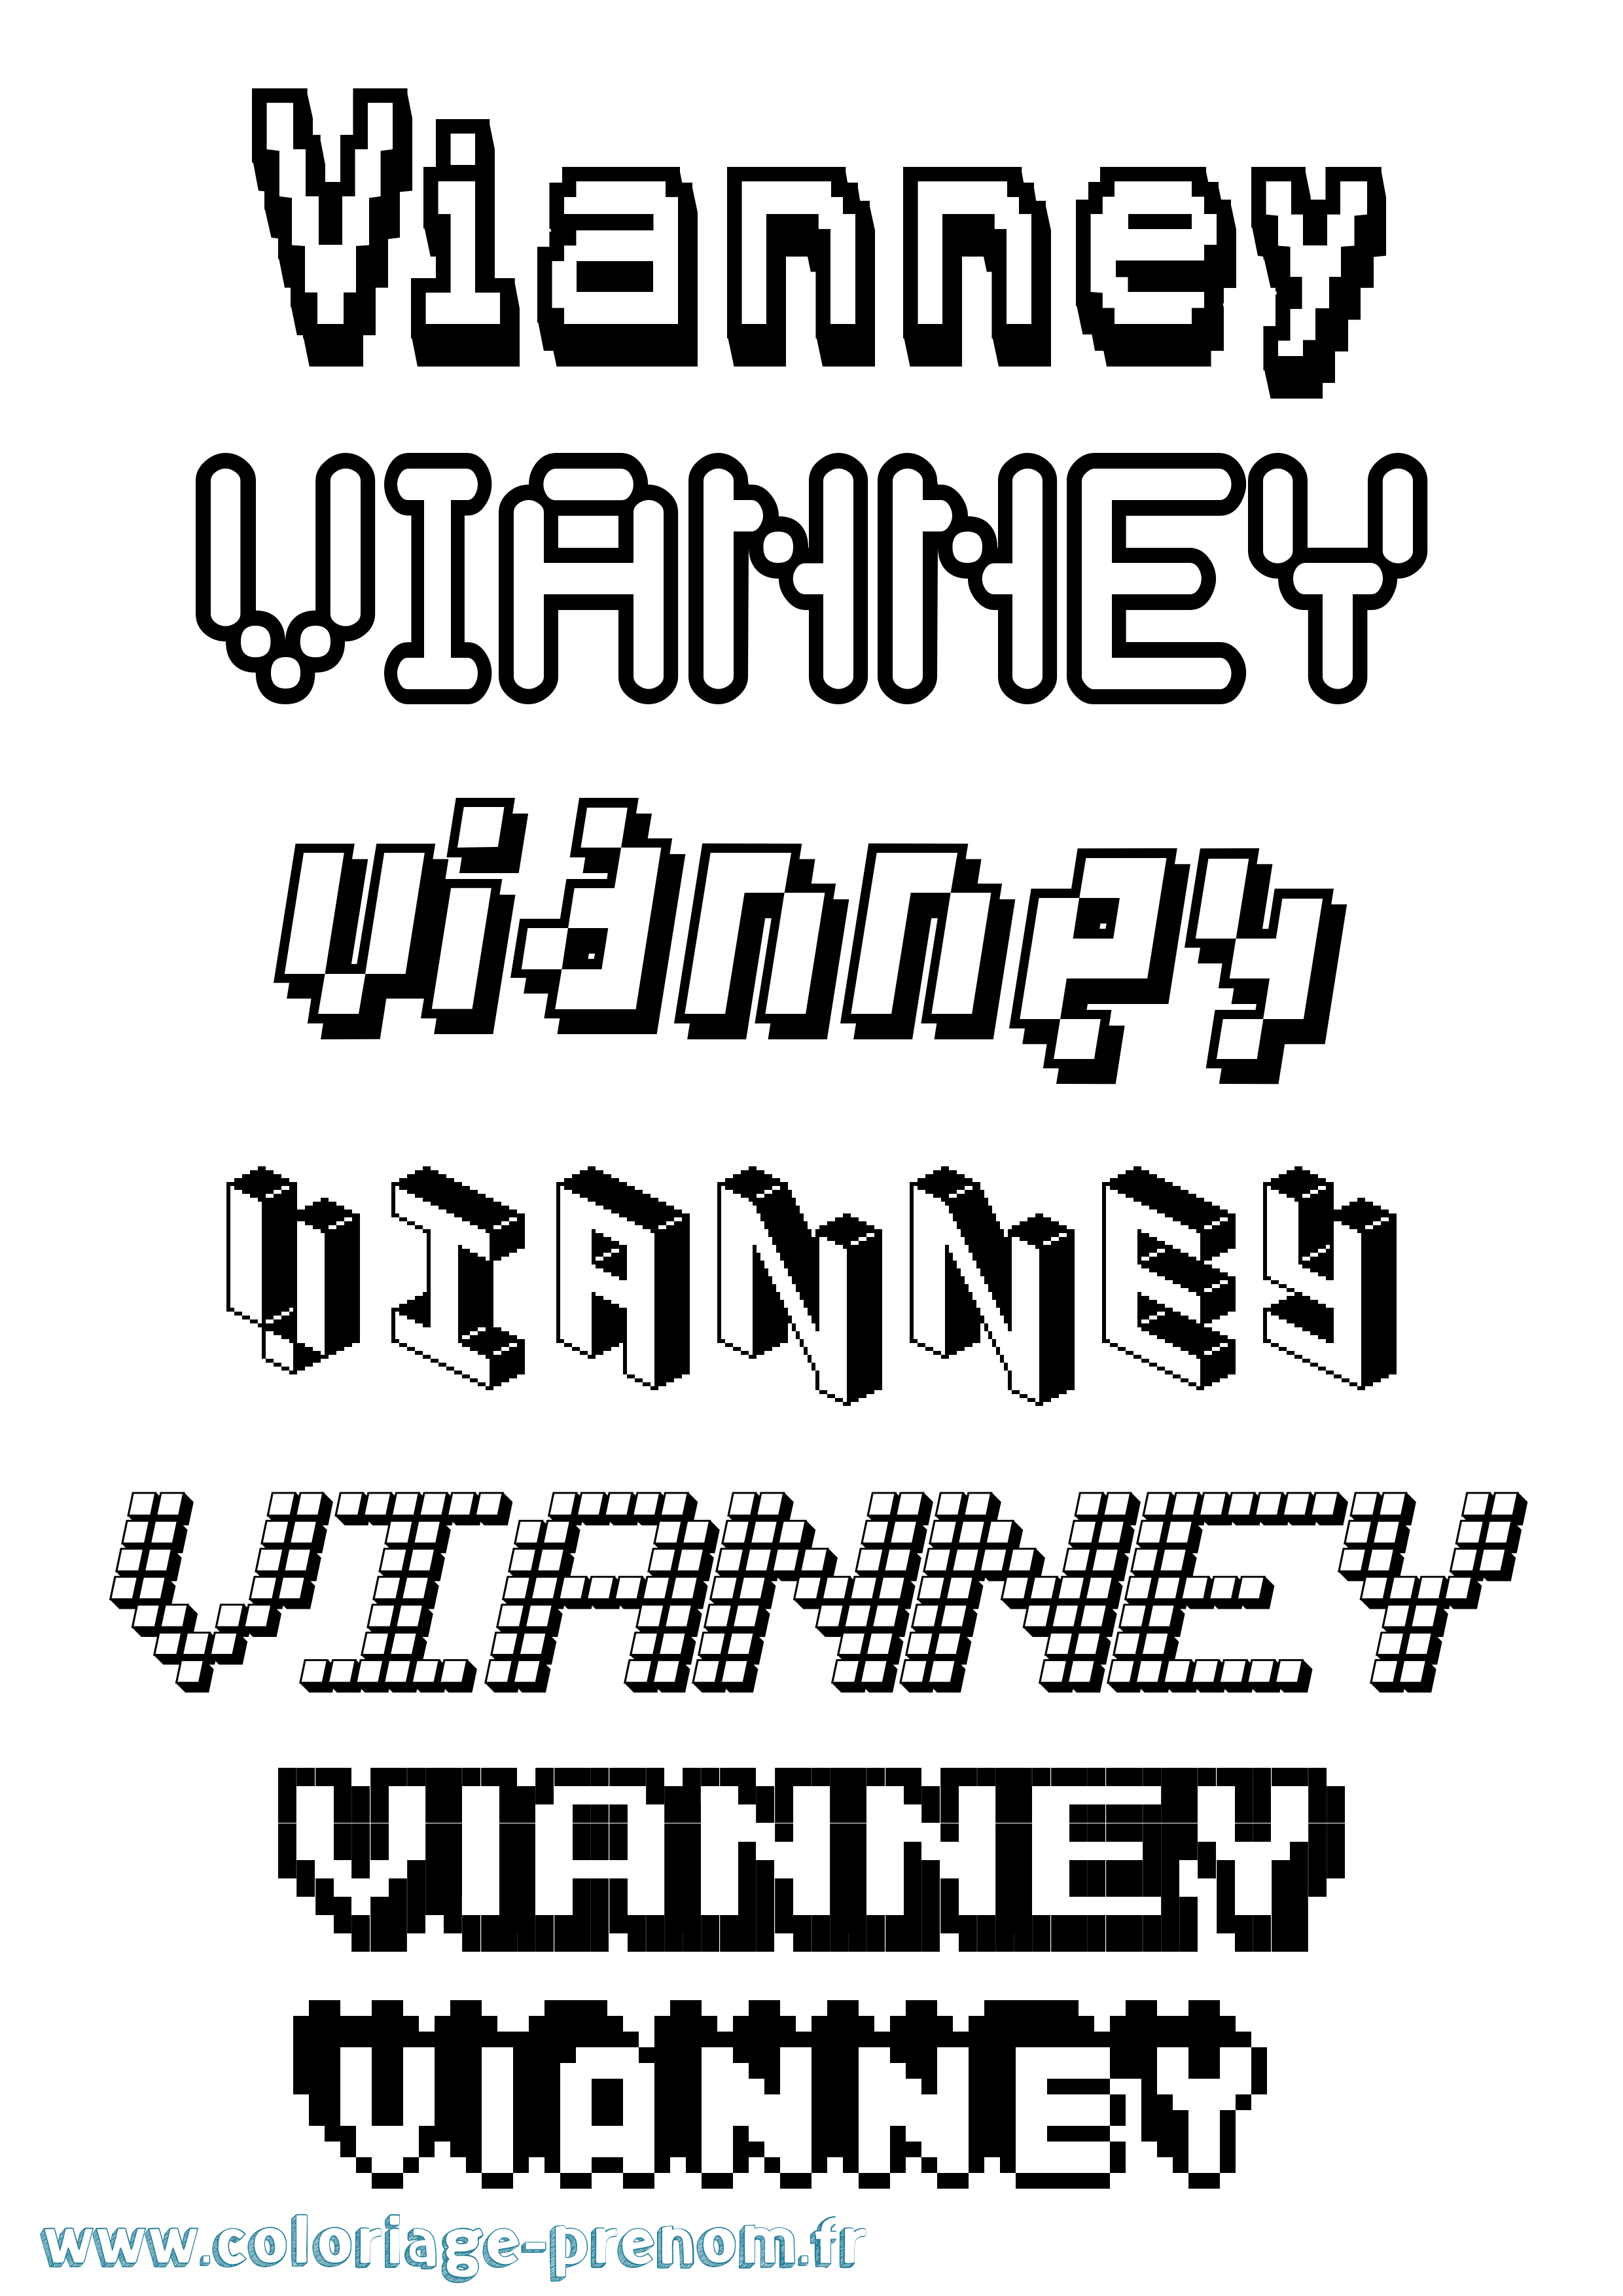 Coloriage prénom Vianney Pixel